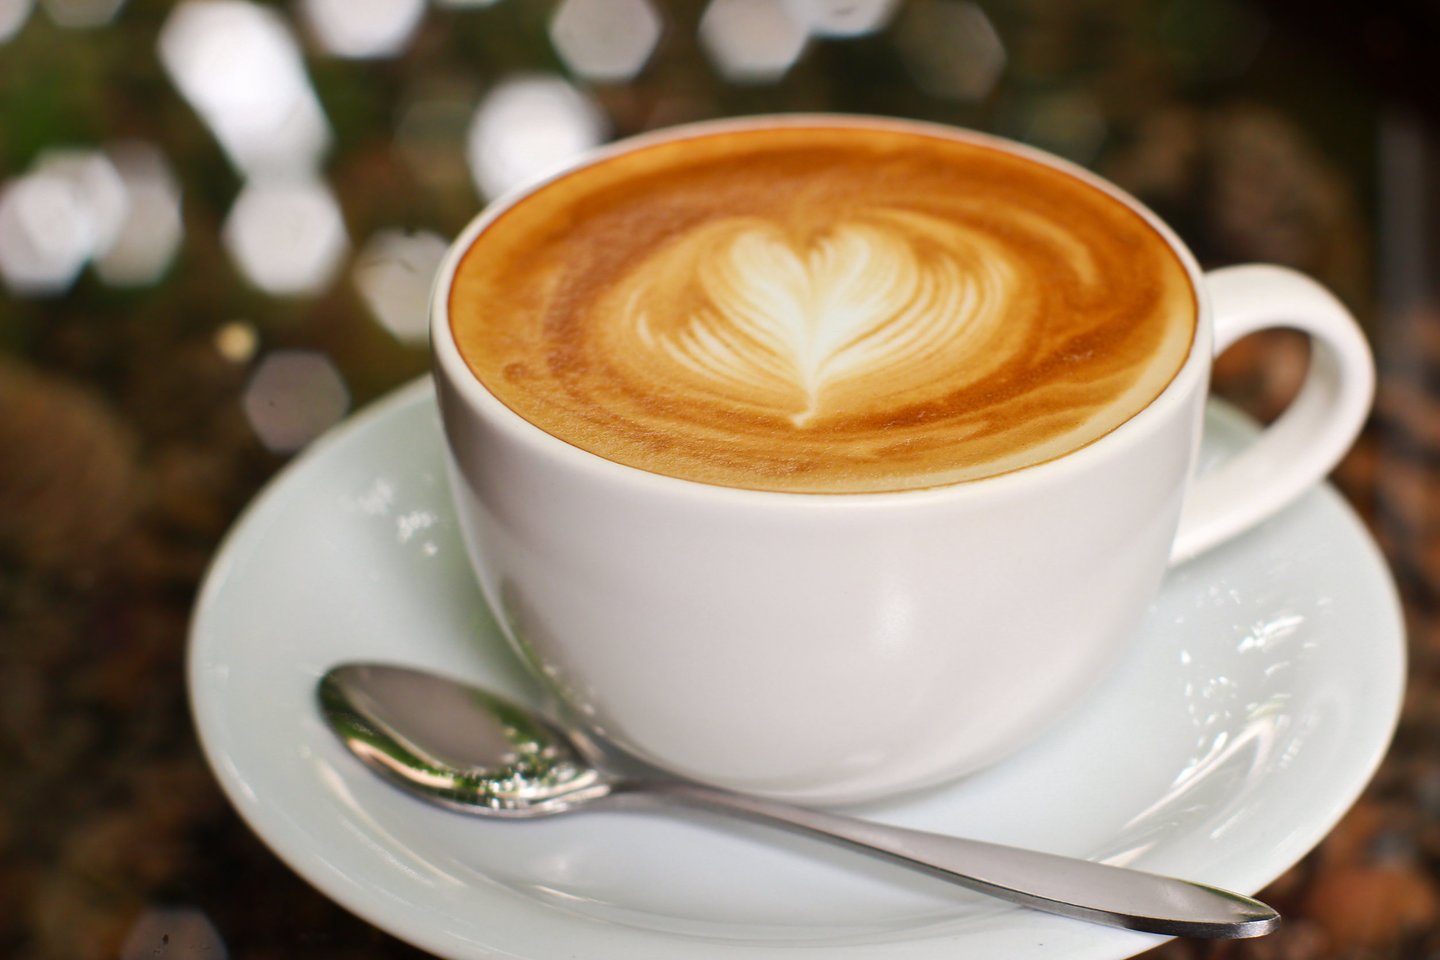 Nerimaujate, kad kava privers jūsų širdį sparčiau paplušėti, ir ne gerąja prasme?<br>123rf nuotr.